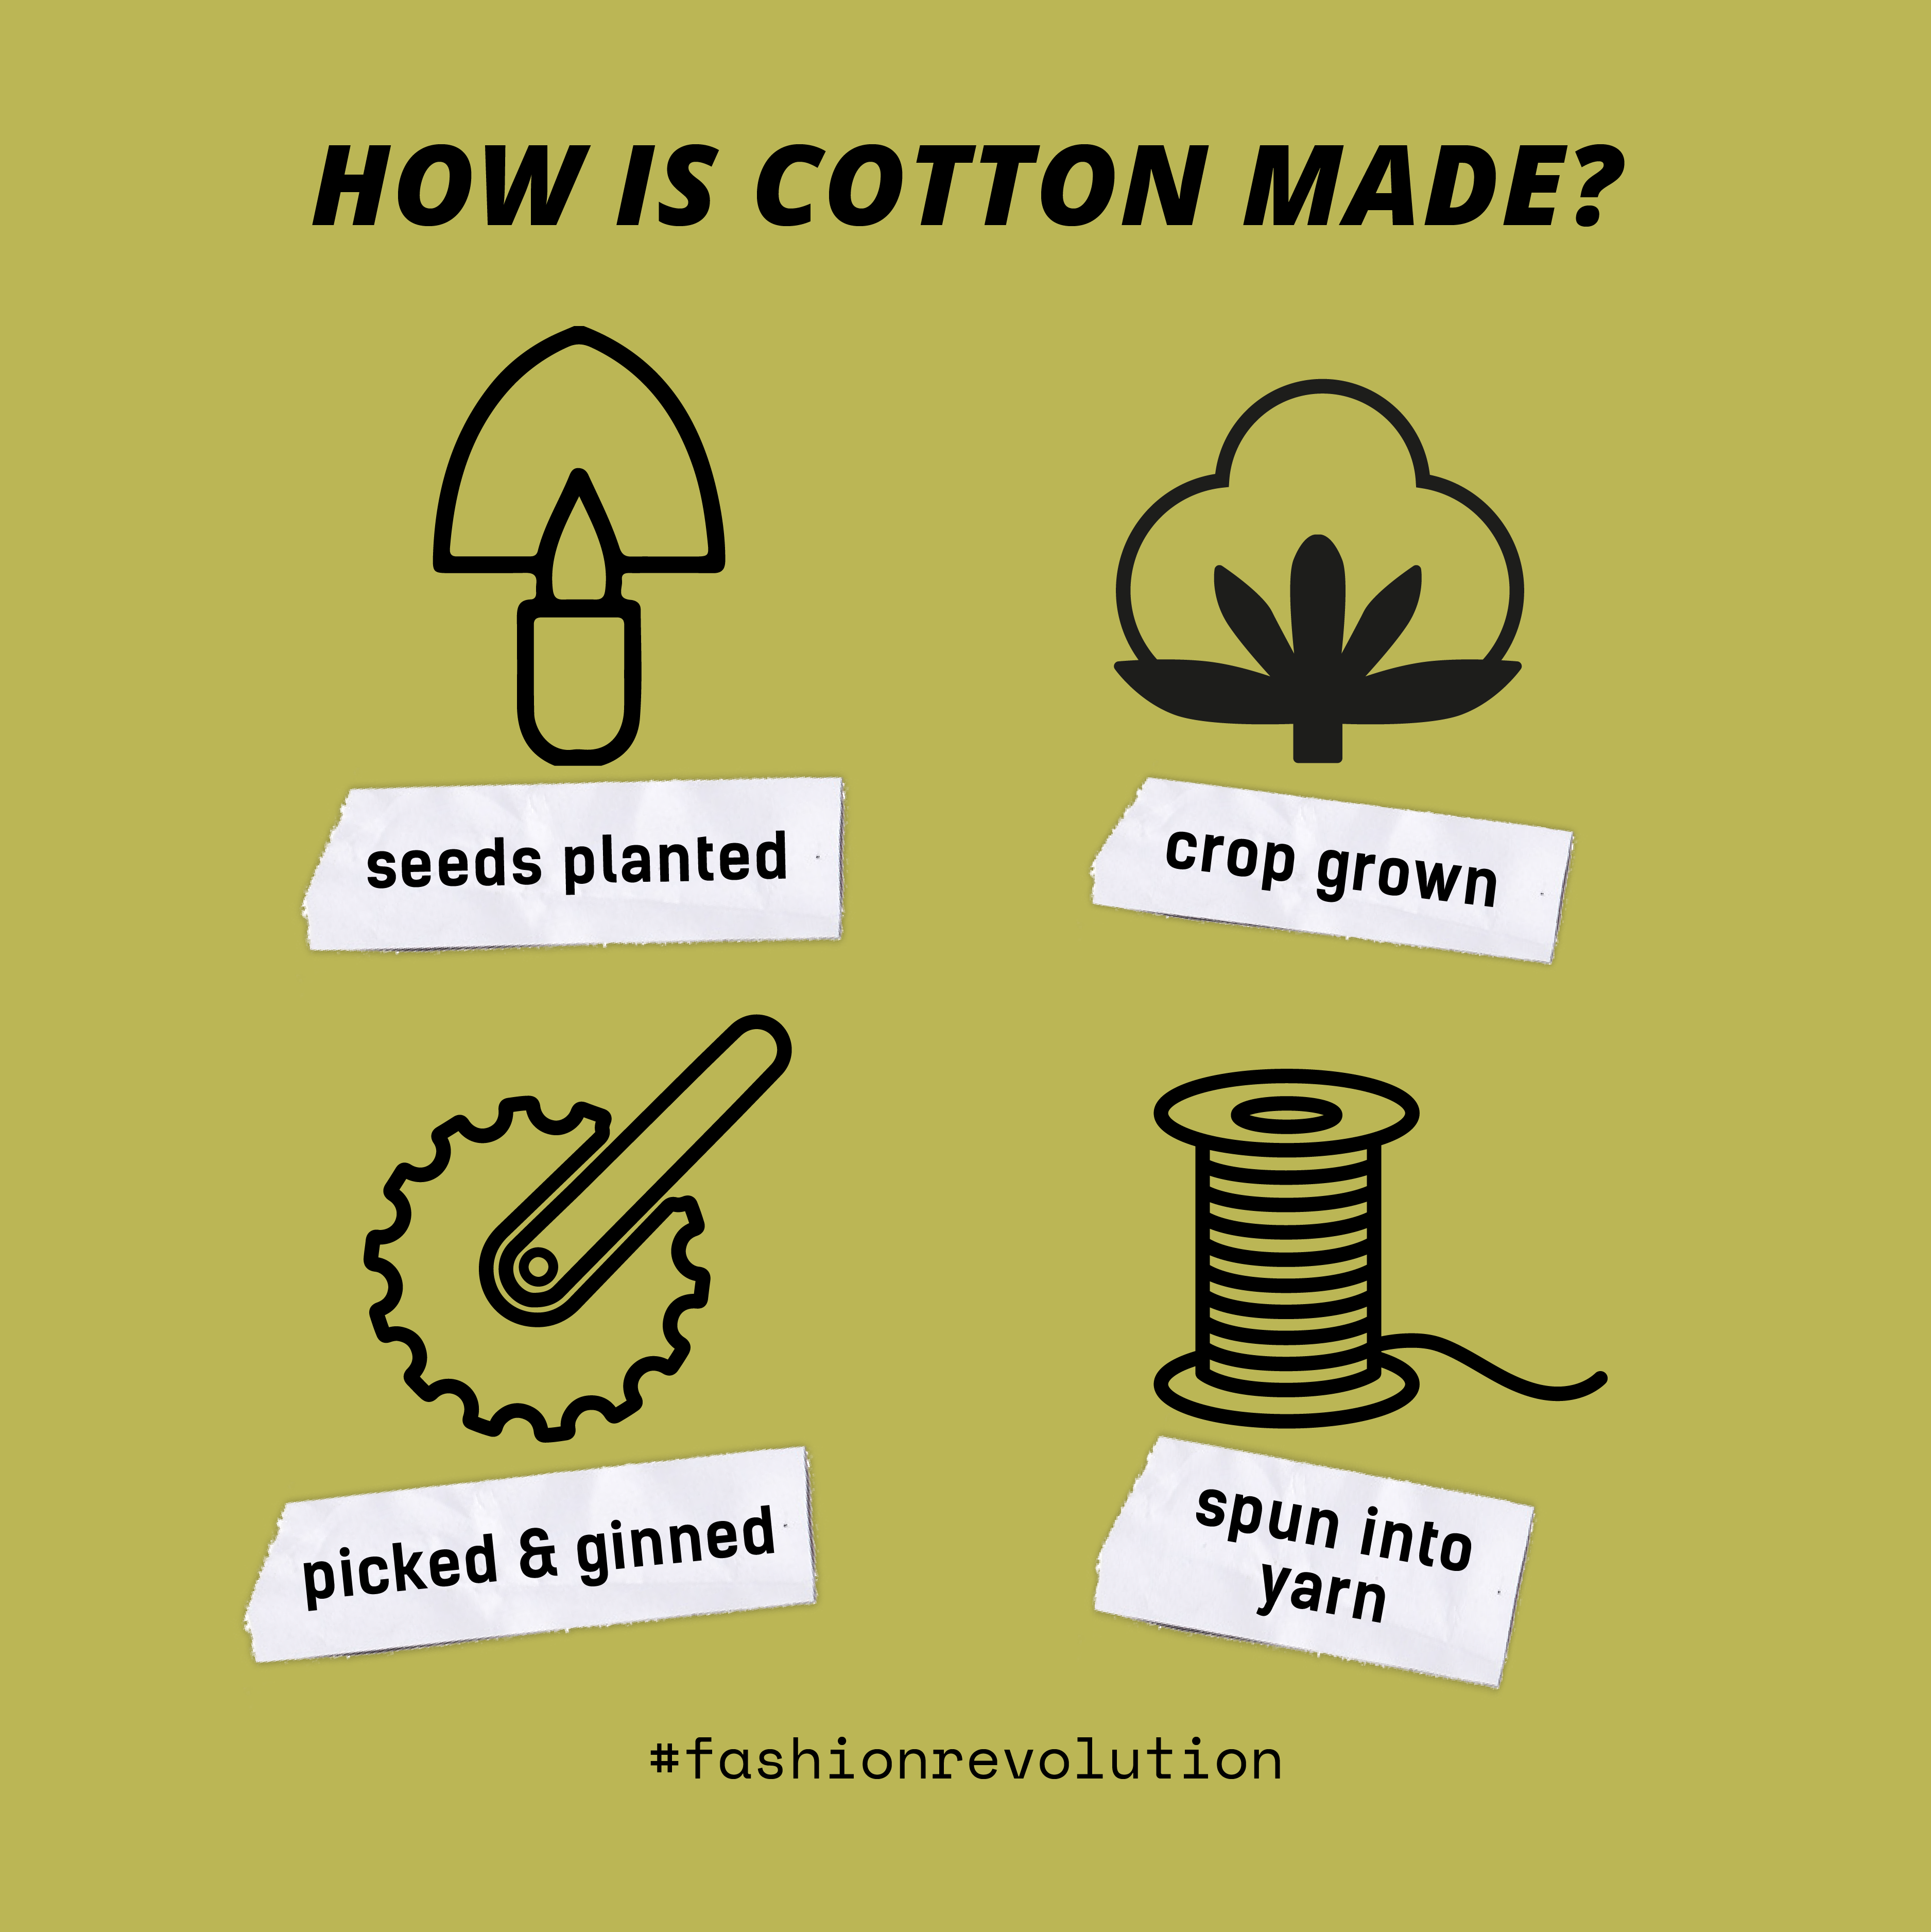 cotton harvest process